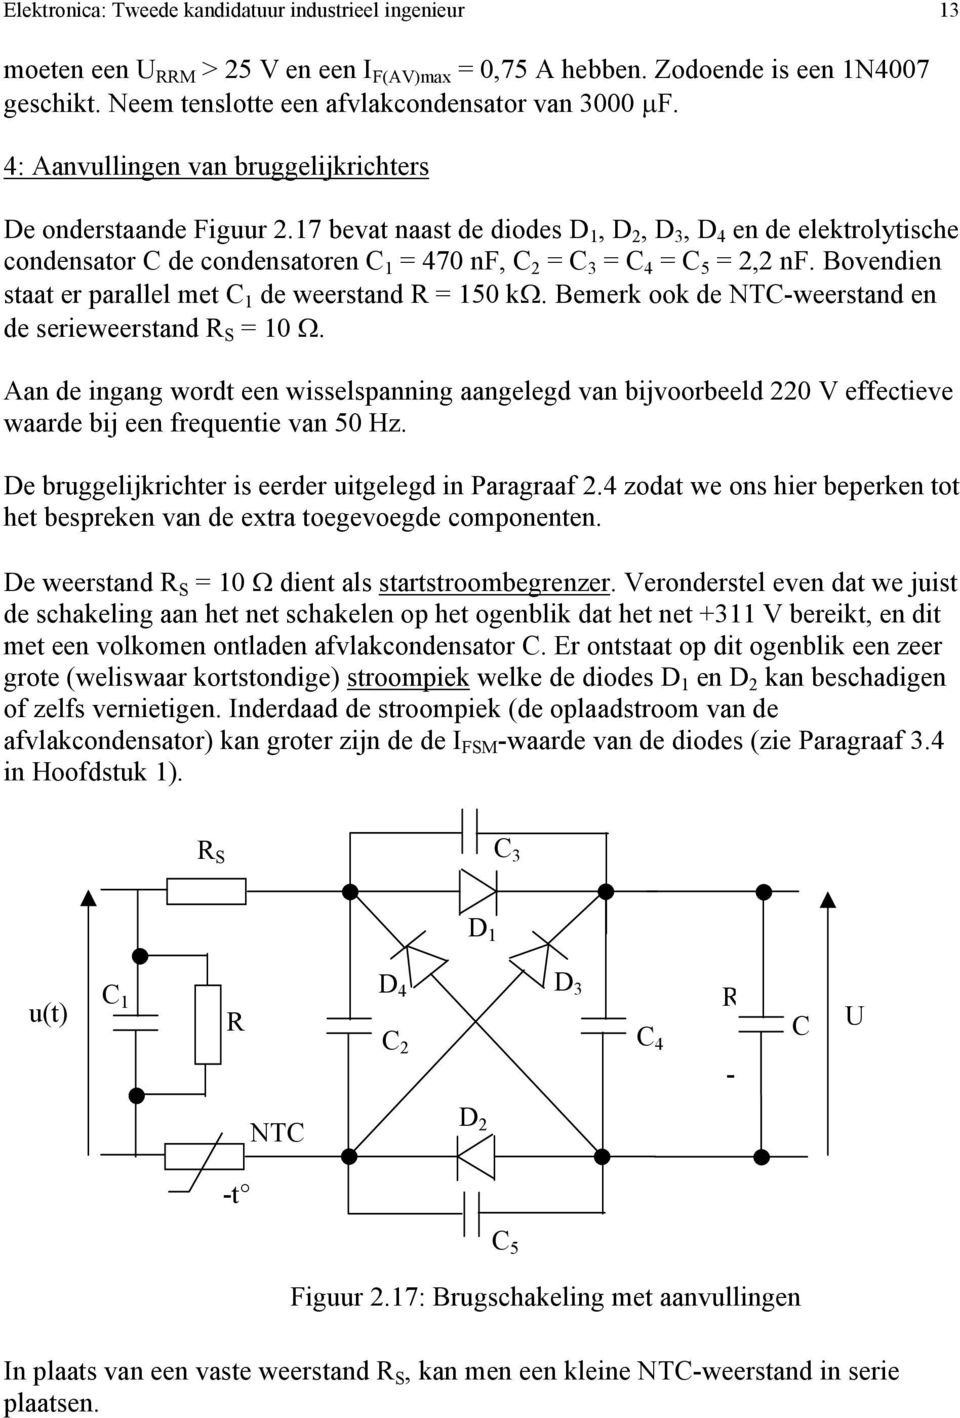 17 bevat naast de diodes D 1, D 2, D 3, D 4 en de elektrolytische condensator C de condensatoren C 1 = 470 nf, C 2 = C 3 = C 4 = C 5 = 2,2 nf.